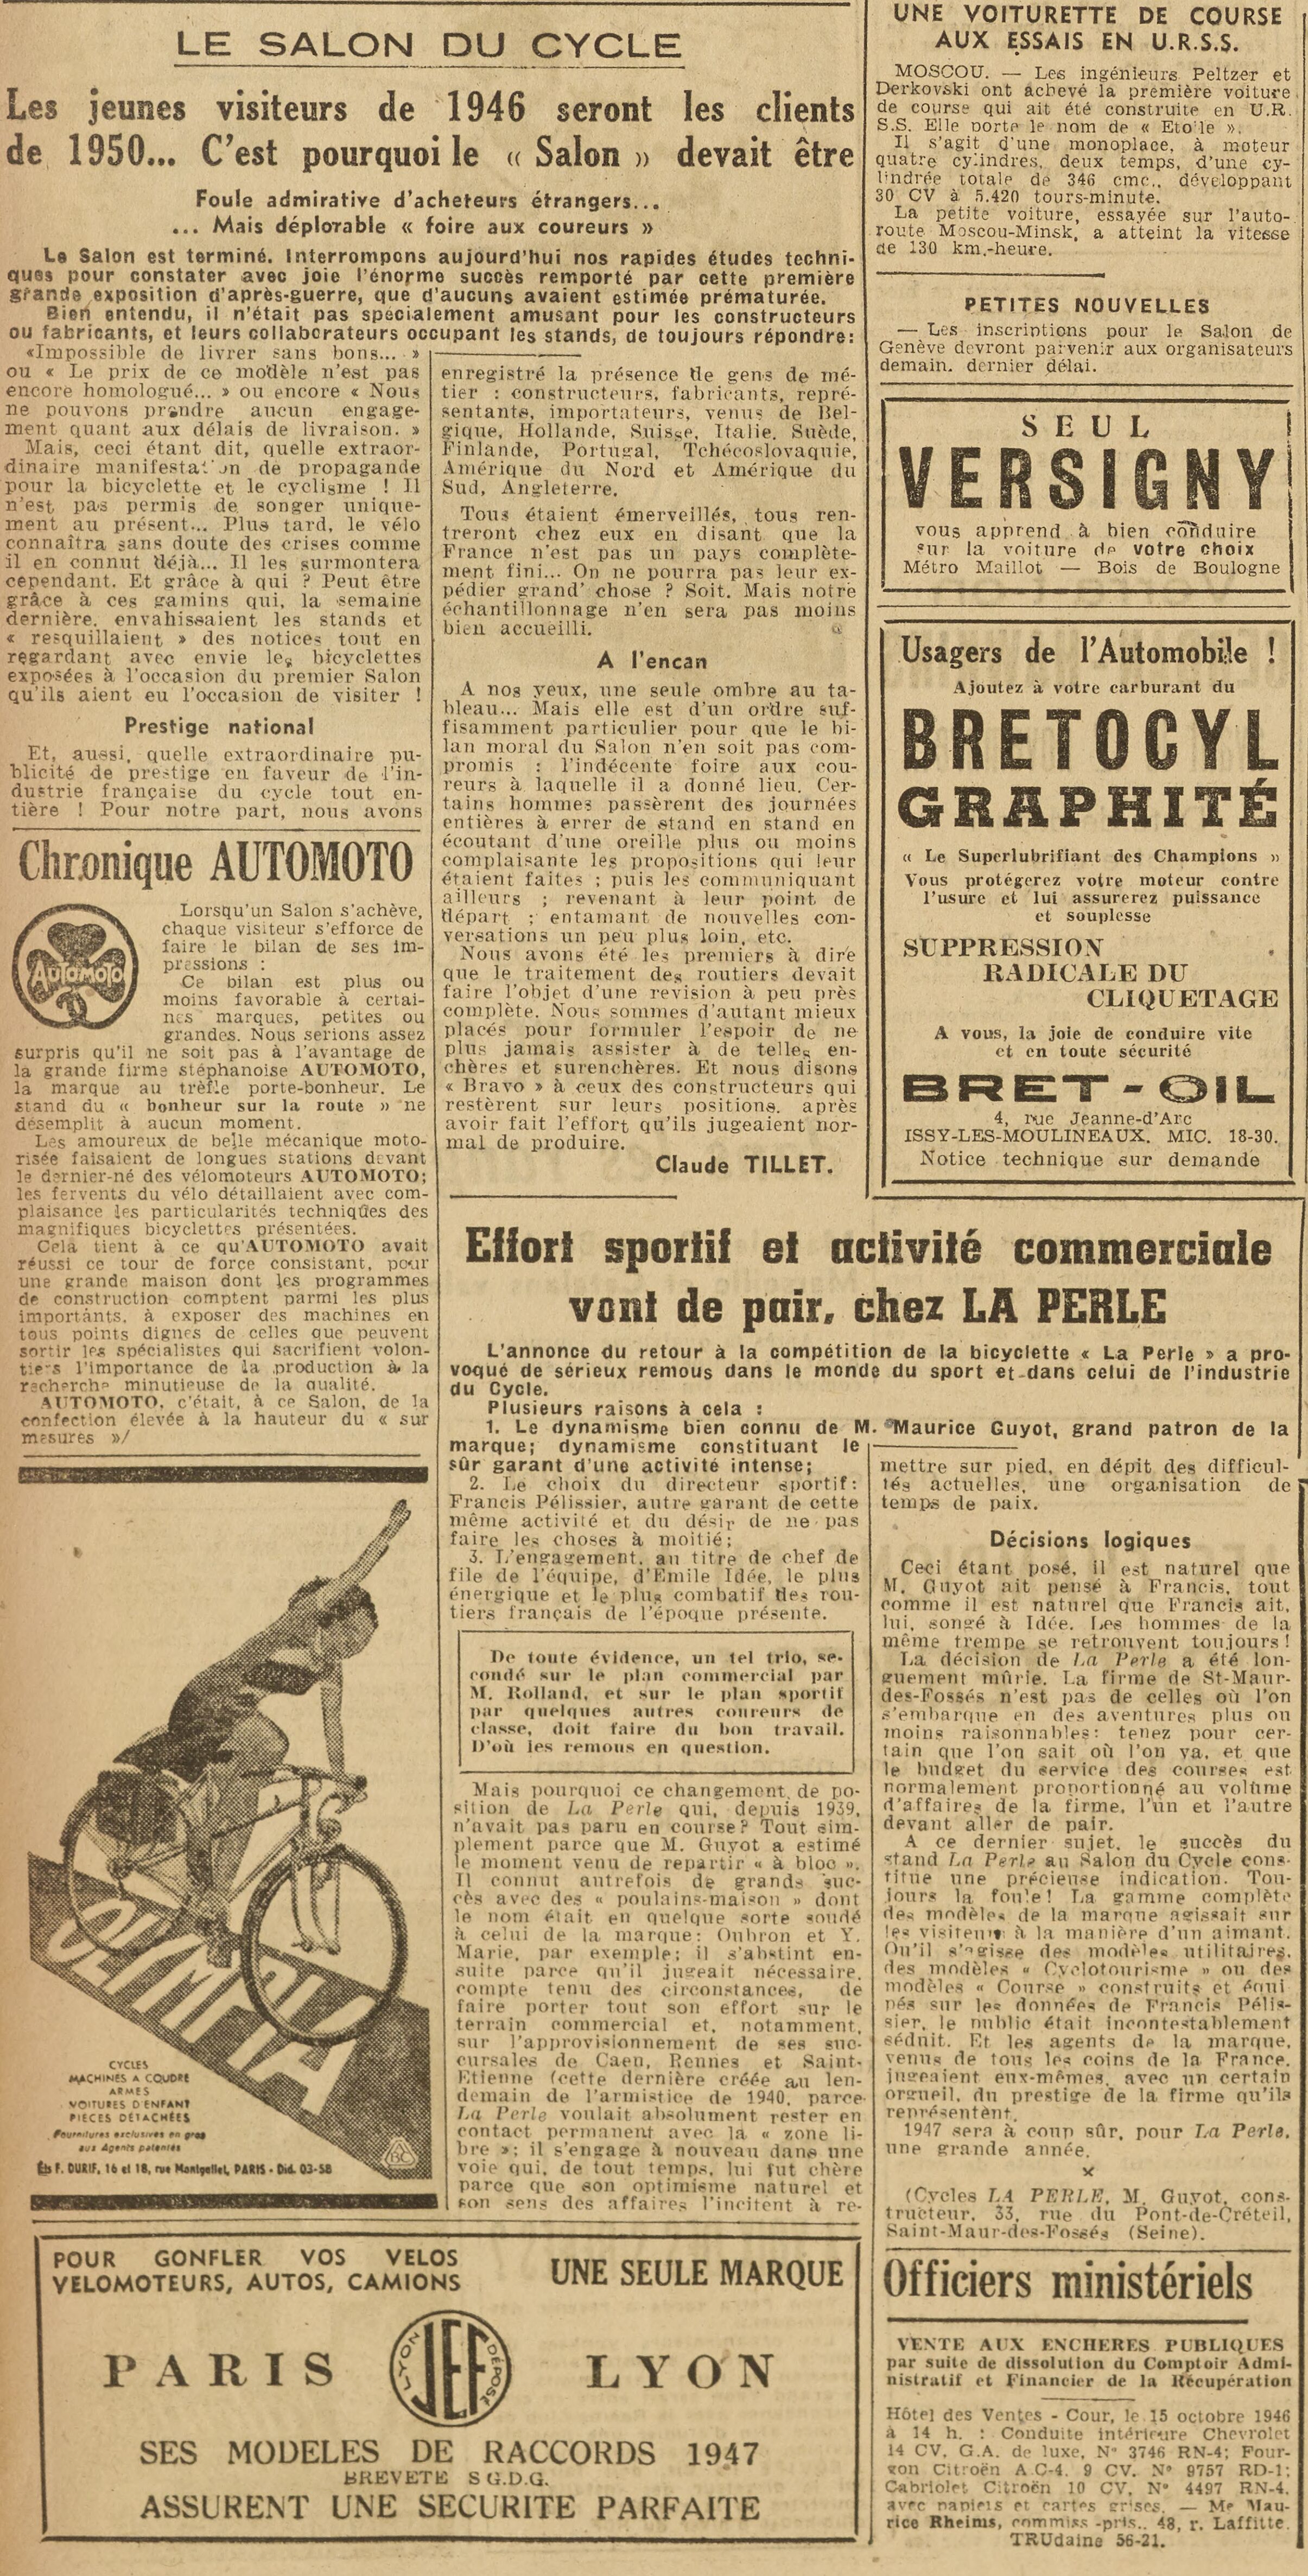 Salon du Cycle octobre 1946, Paris, le Grand Palais - L'Equipe - Cyclo Magazine 230214050441721918111994